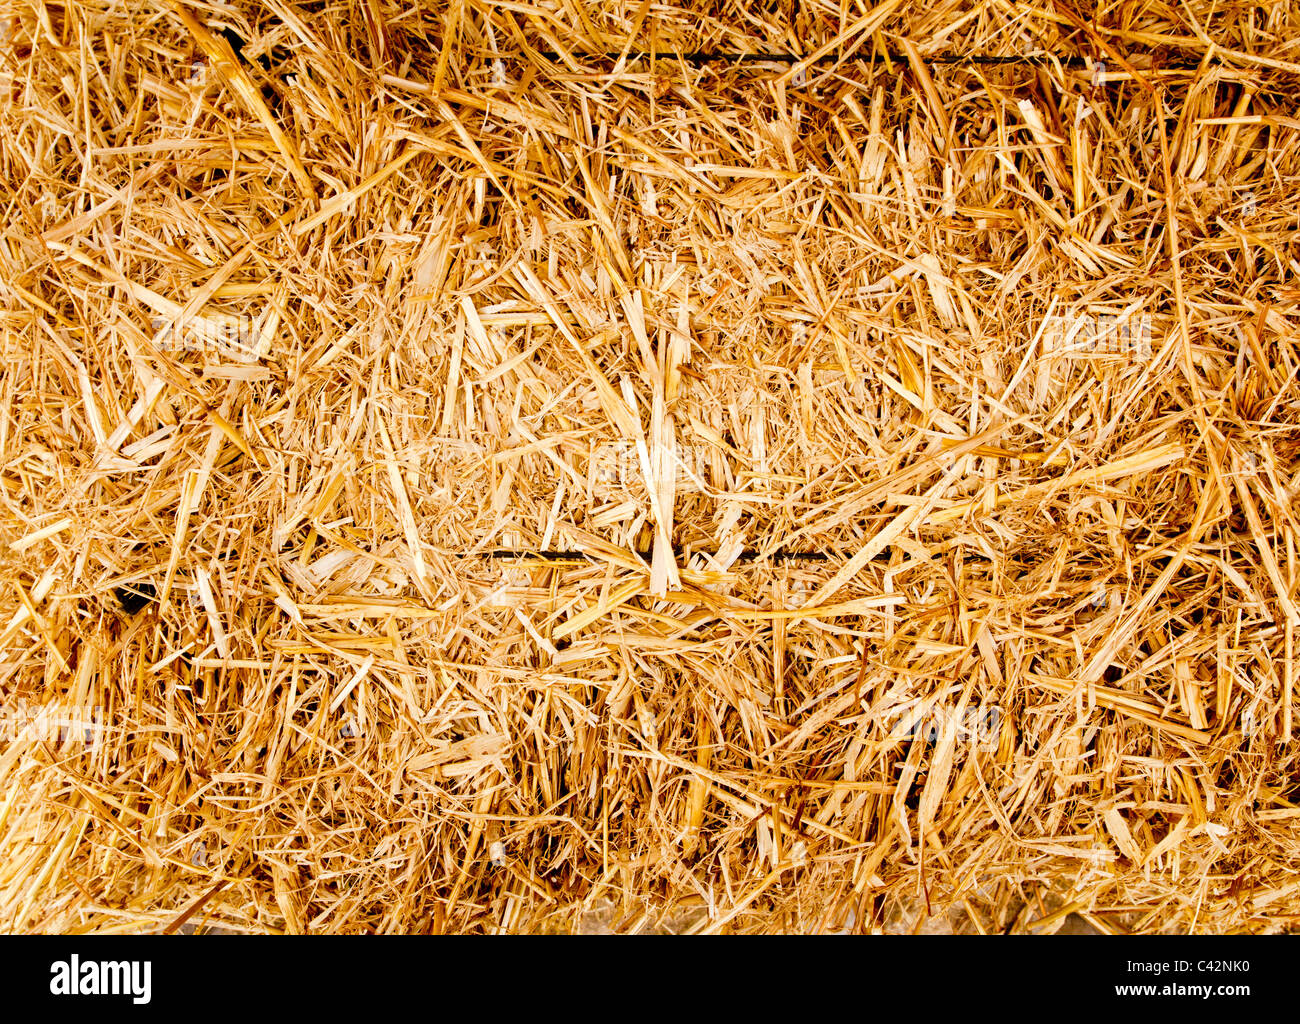 Goldene Ballen Stroh Textur Wiederkäuer tierische Nahrung Hintergrund Stockfoto